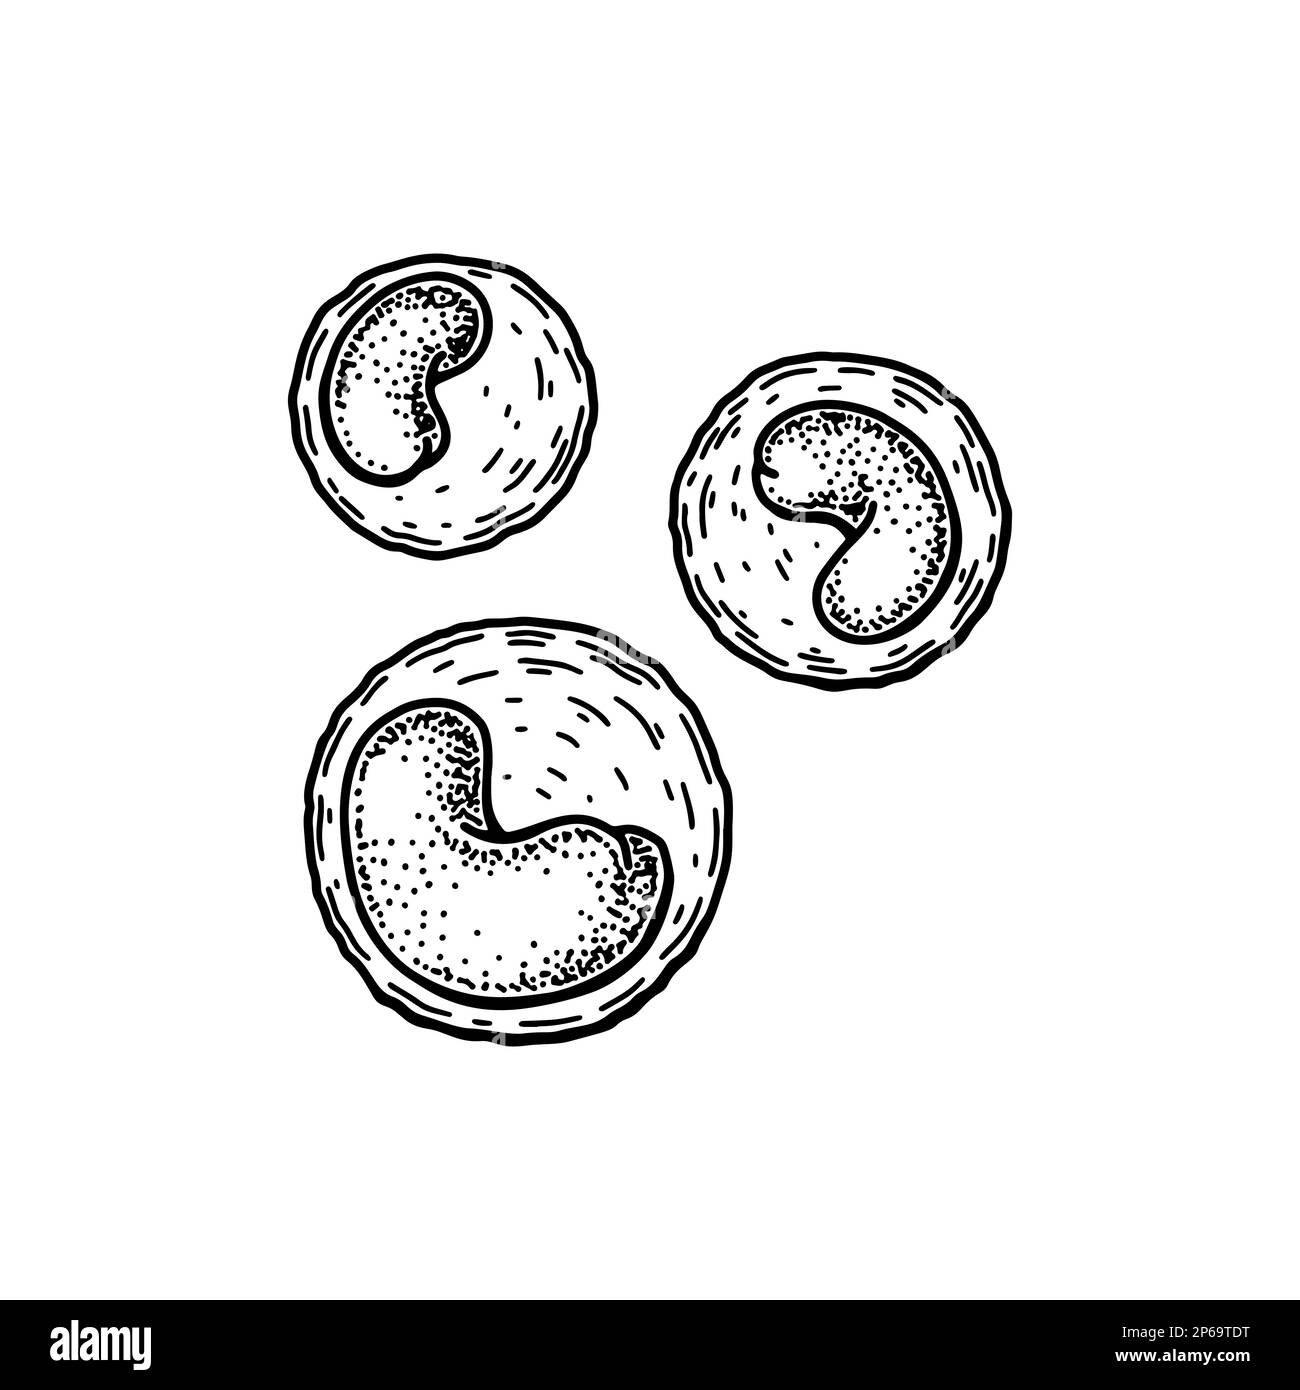 Leucocitos monocitos leucocitos glóbulos blancos aislados sobre fondo blanco. Dibujado a mano ilustración vectorial de microbiología científica en estilo de boceto Ilustración del Vector